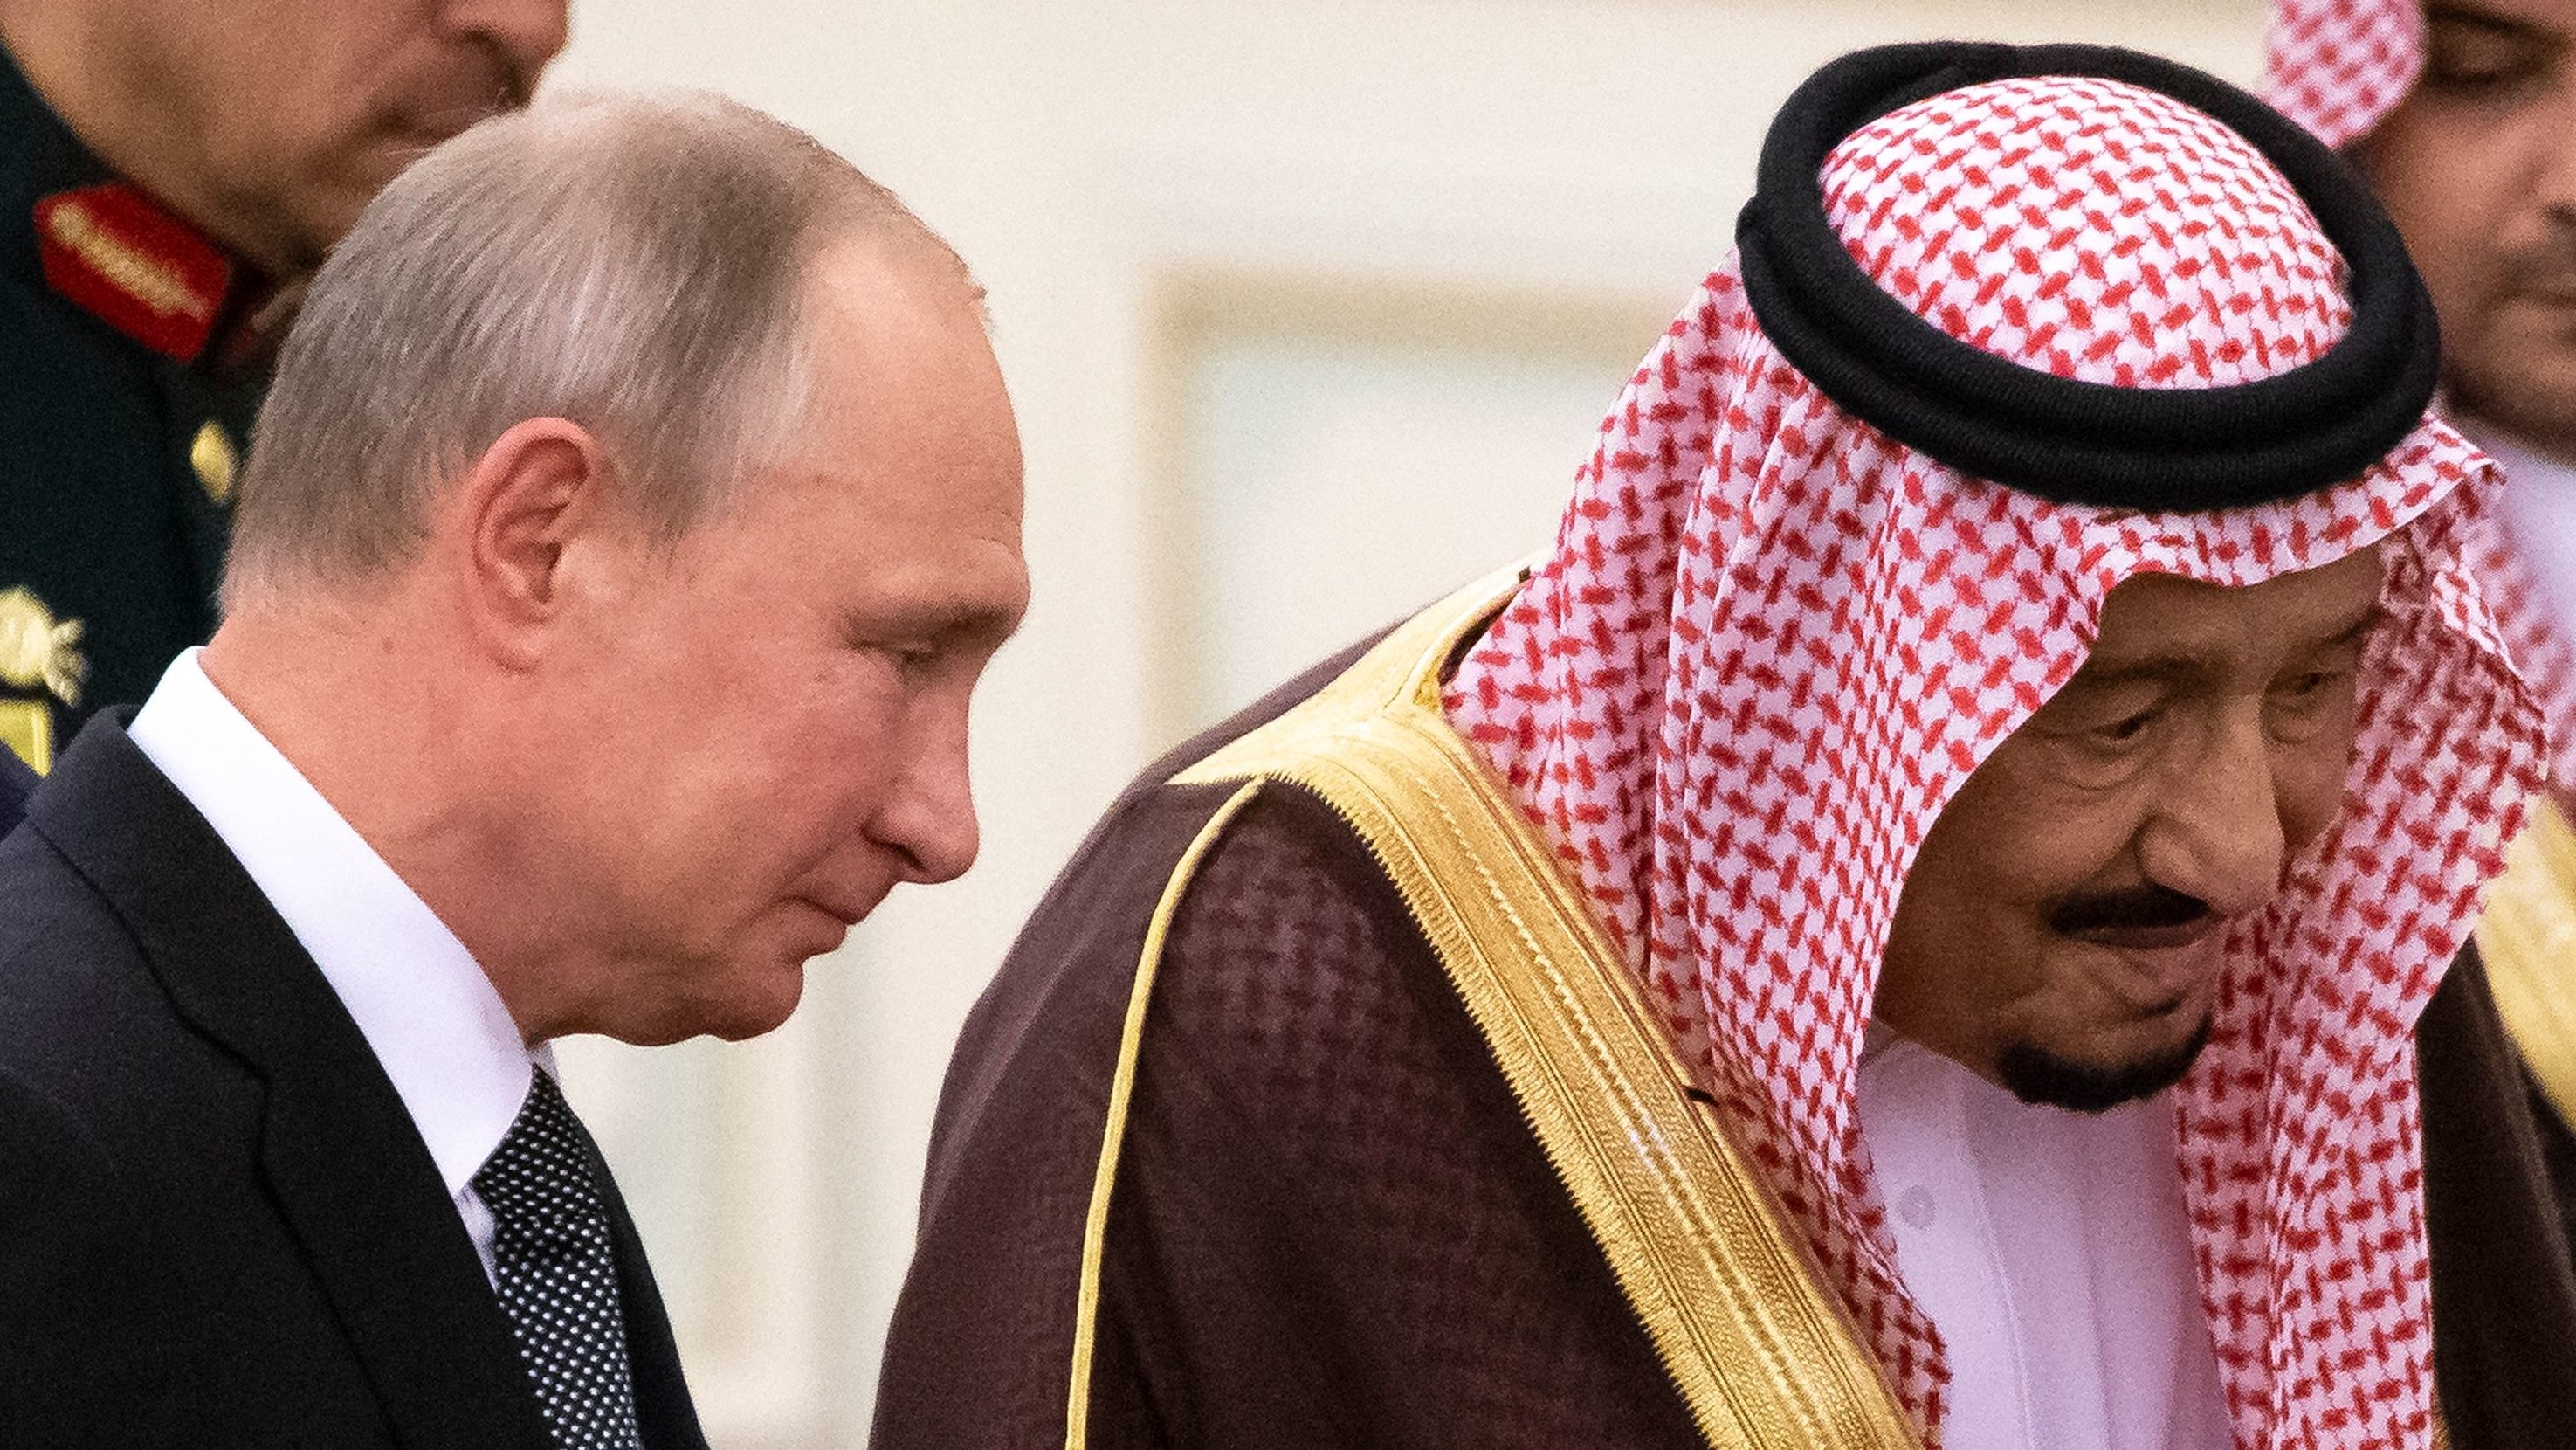 Putin’s Gulf Welcomes Show He’s the ‘Region’s Arbiter’